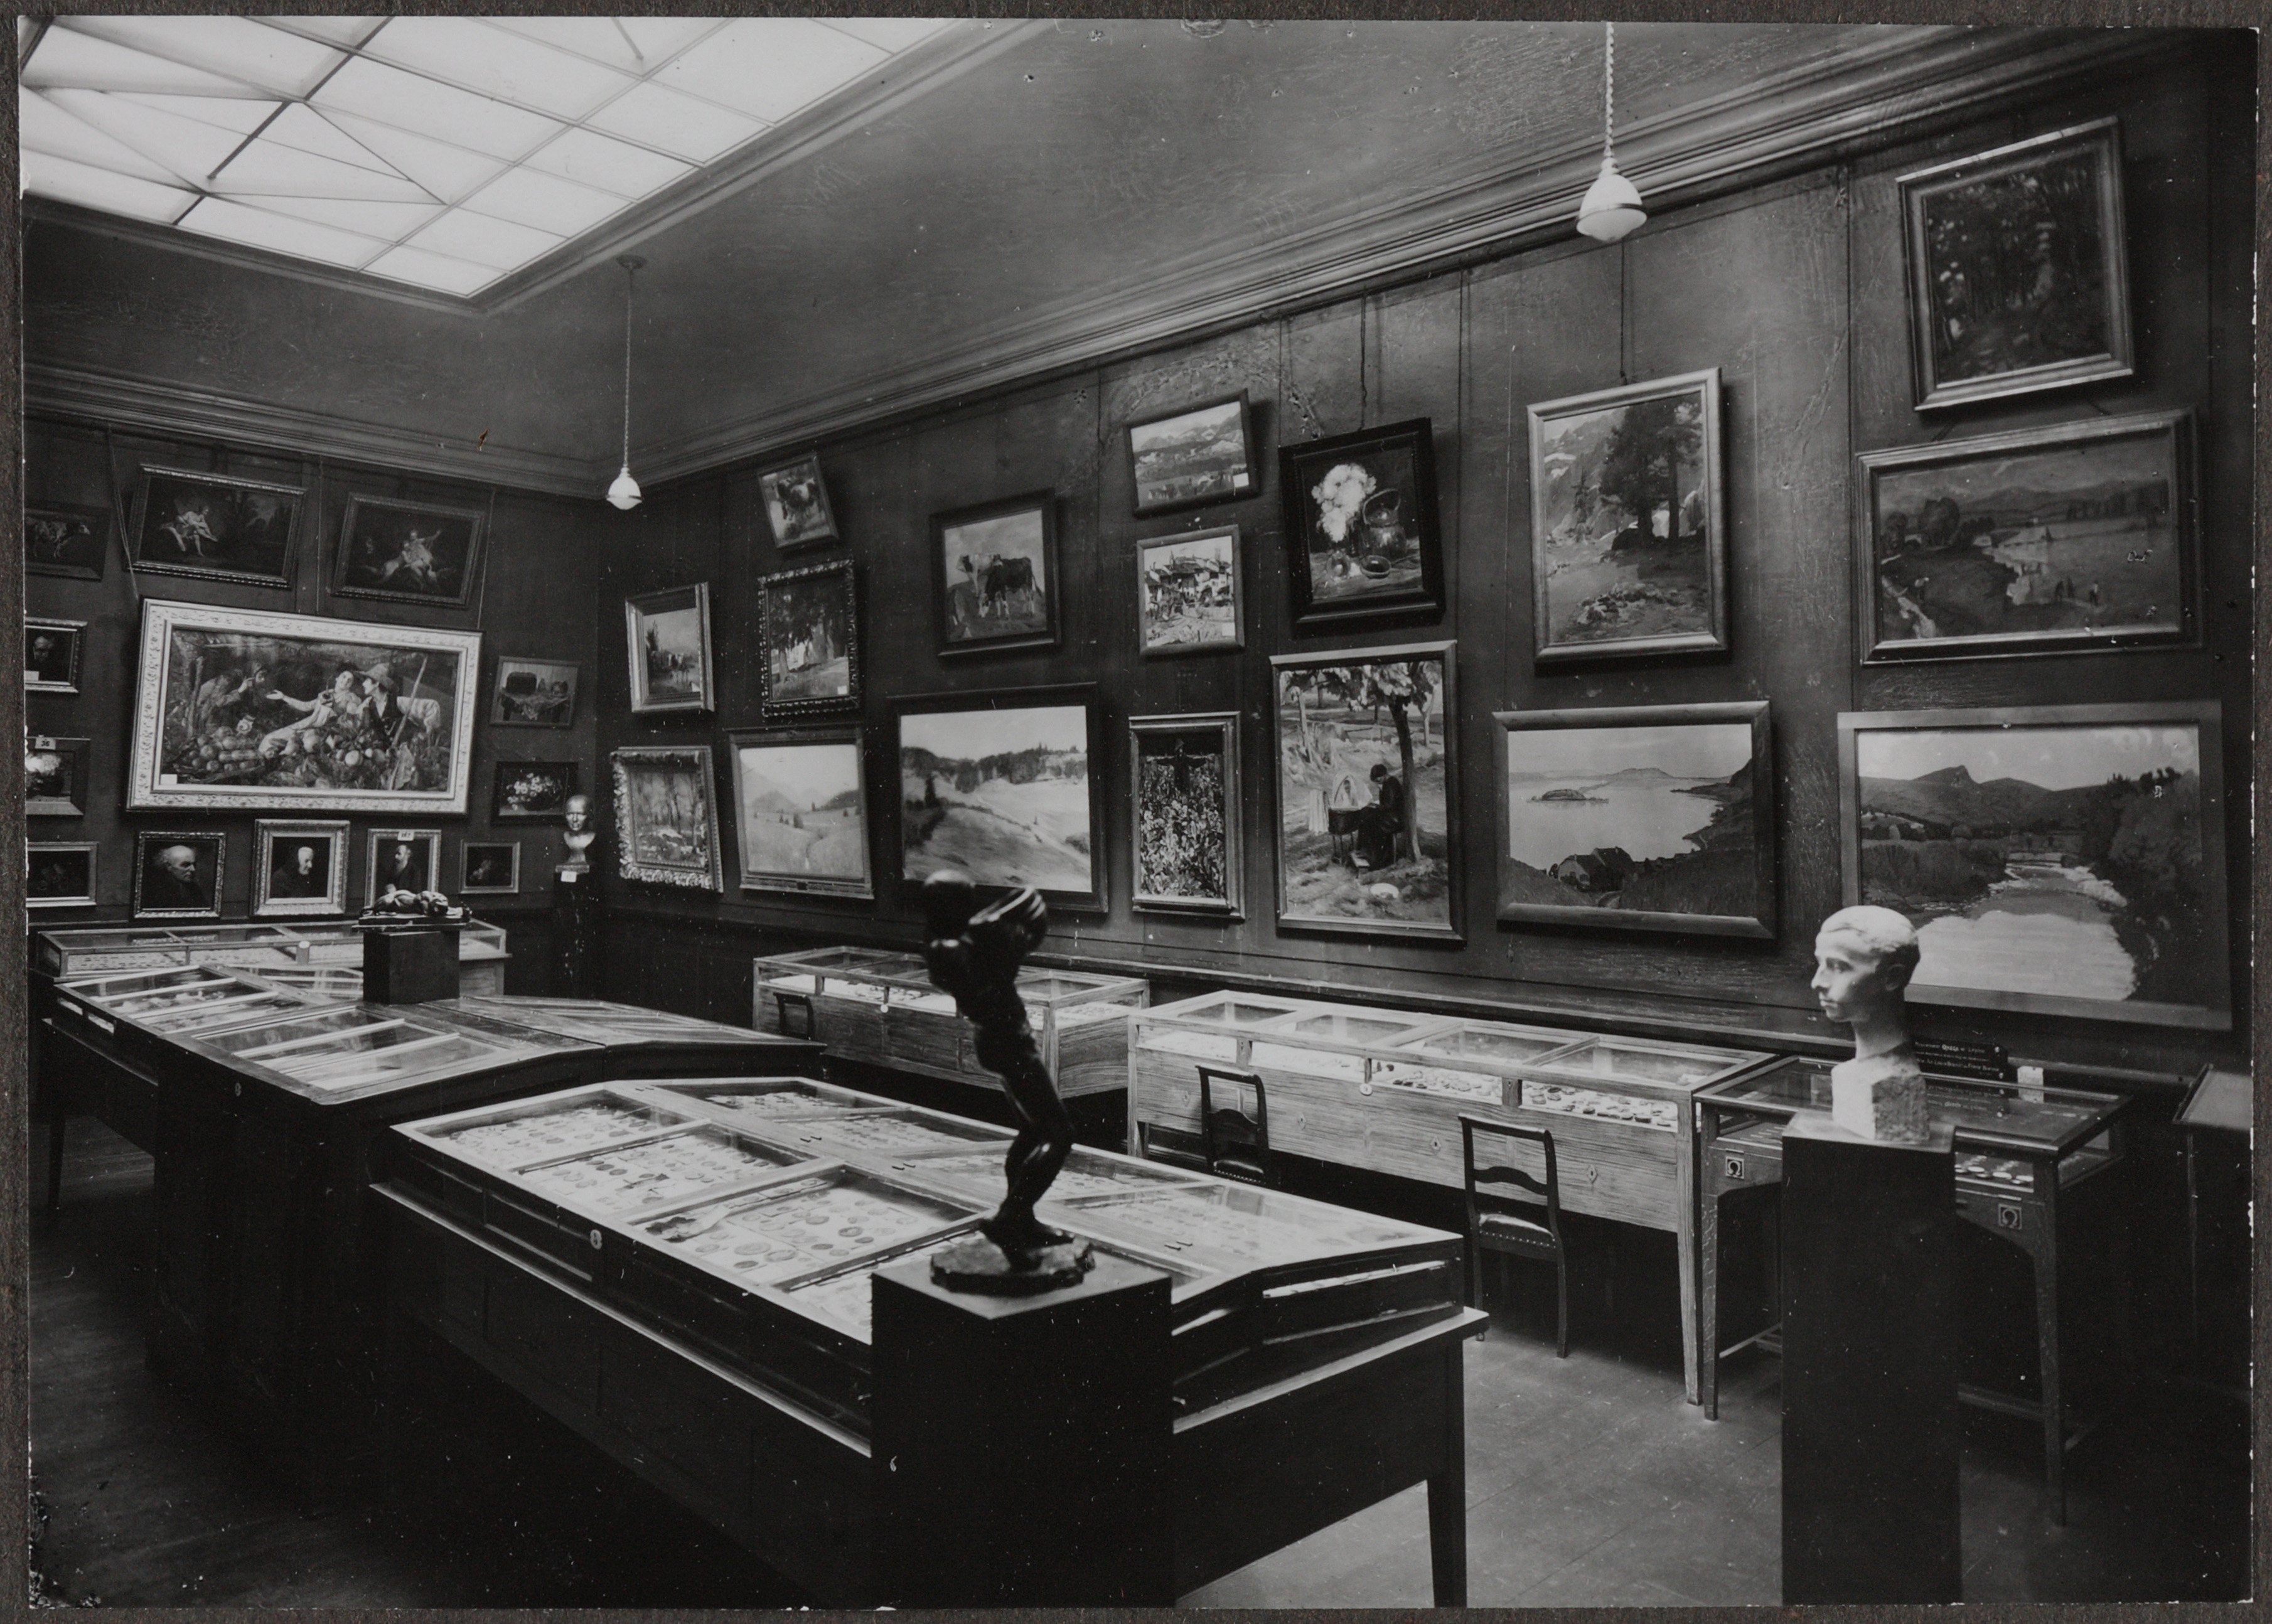 Photographie en noir et blanc d'une salle avec de nombreux tableaux, sculptures et vitrines avec des chaises à l'avant. La lumière passe par une fenêtre au plafond.